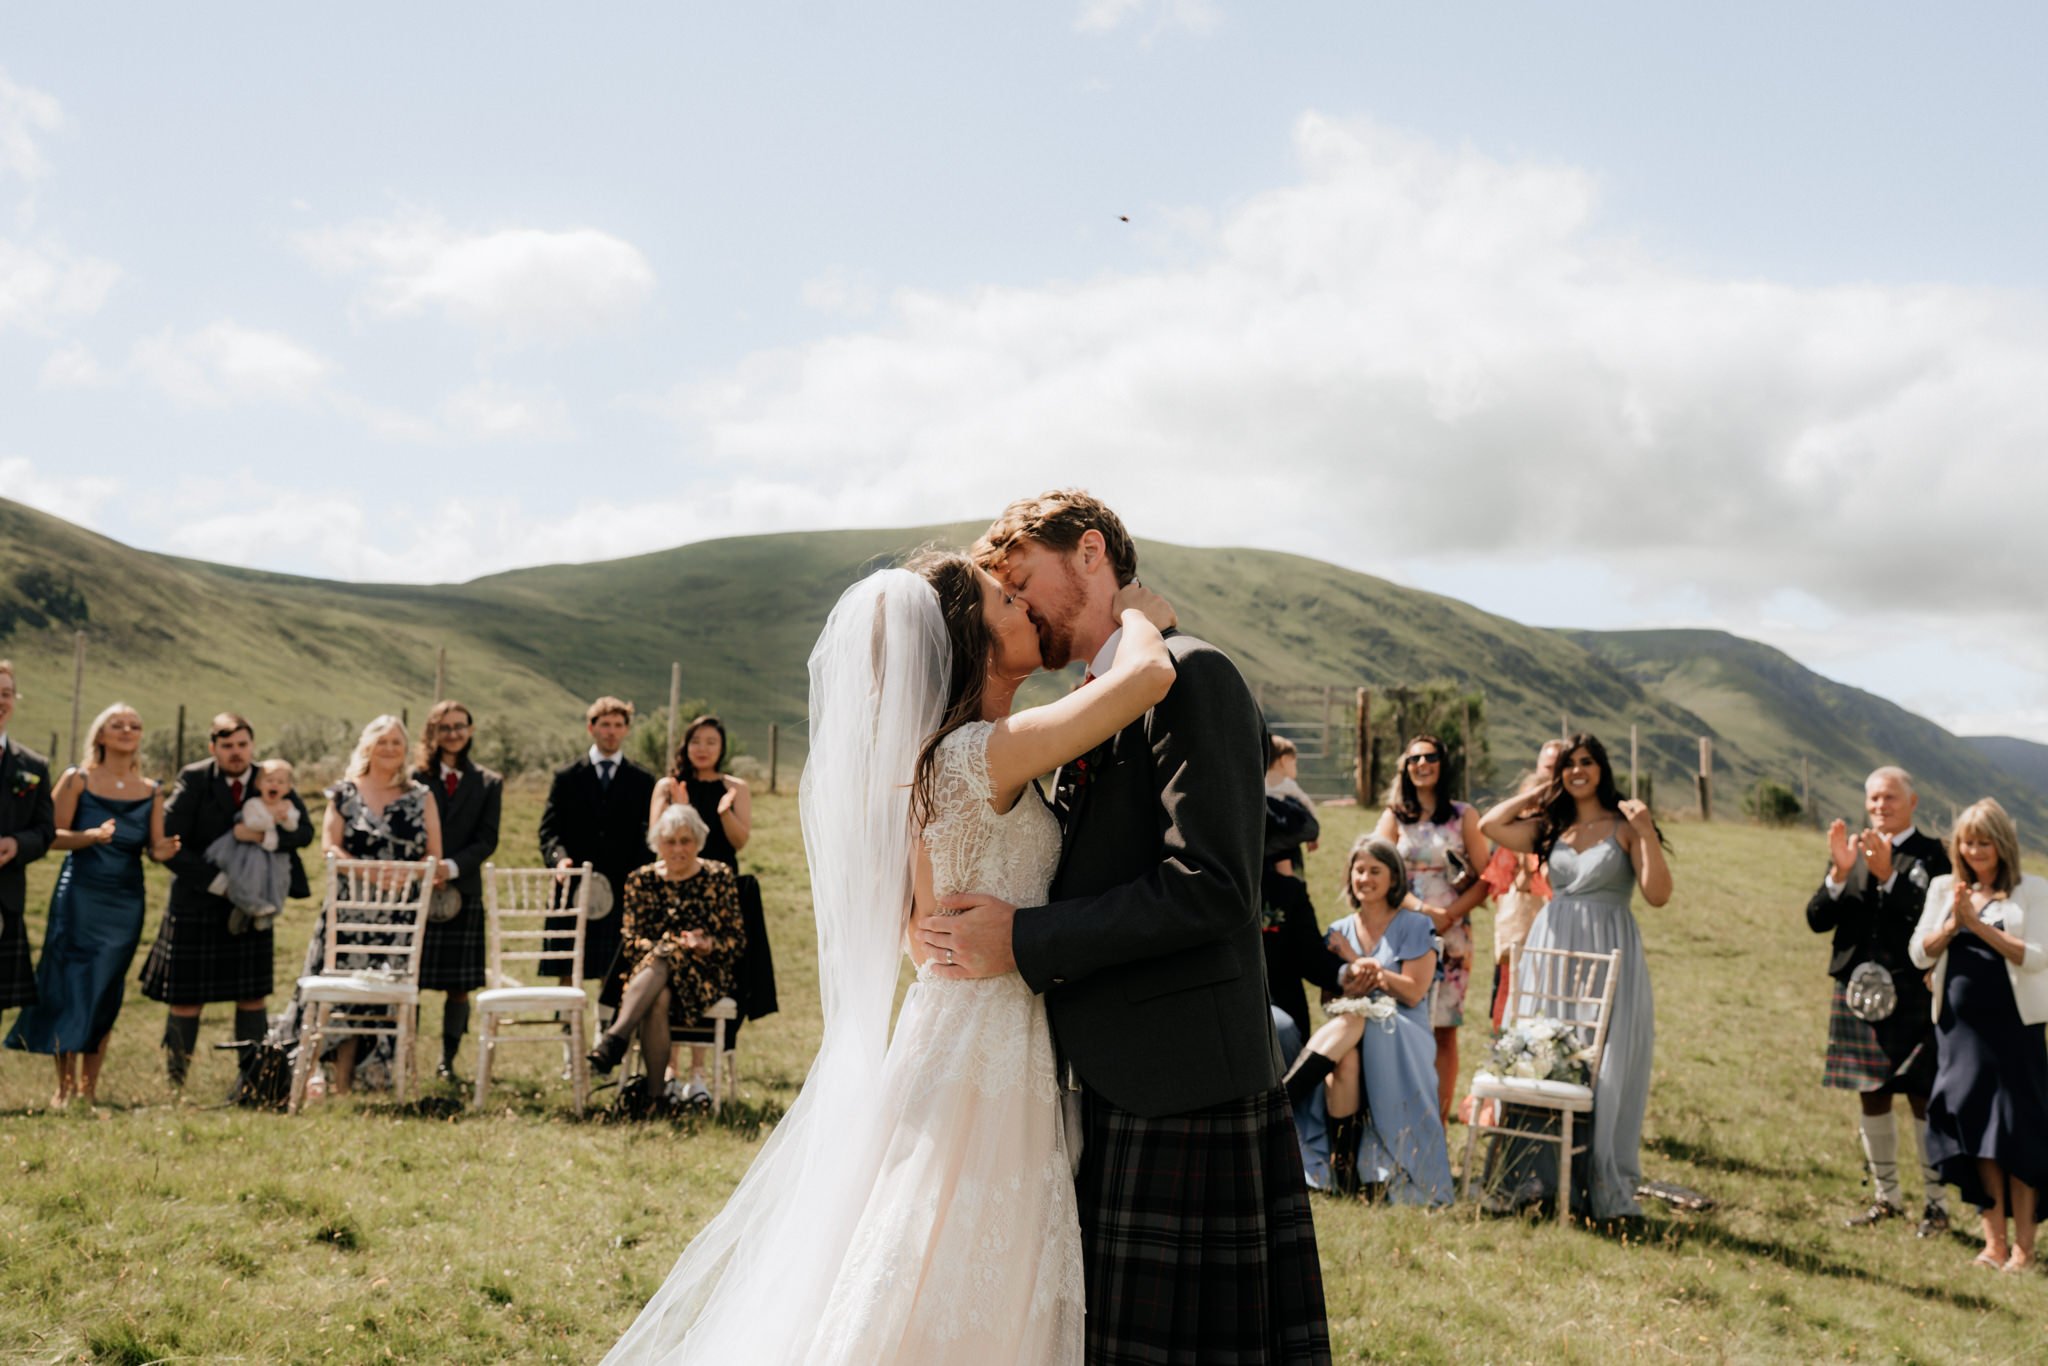 Glen Clova Hotel wedding photography | Aberdeenshire wedding photographer and videographer-33.jpg